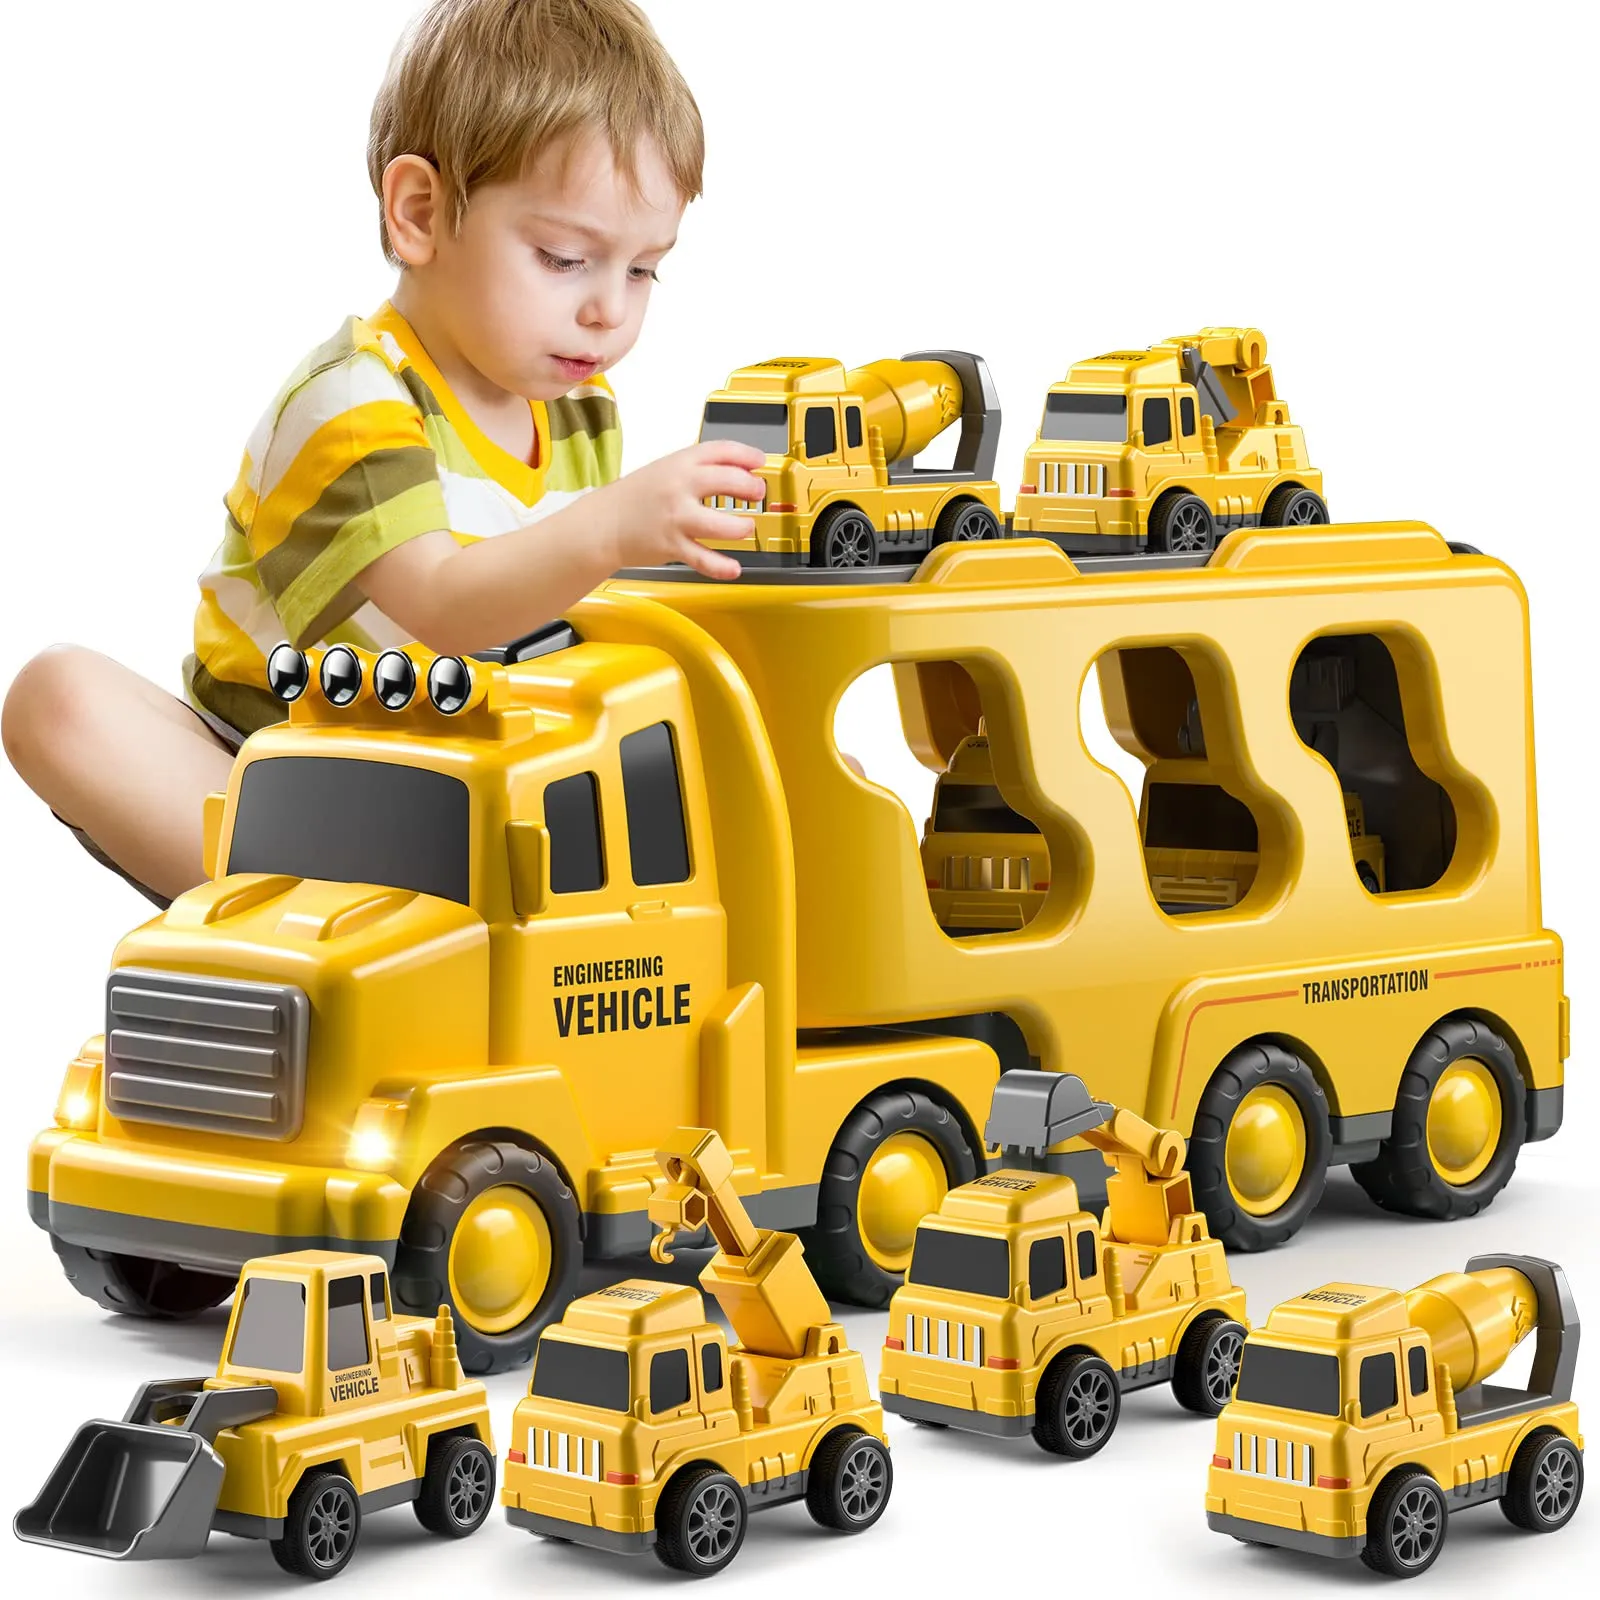 

Литый грузовик-переносчик, игрушки, автомобили, Инженерная техника, экскаватор, бульдозер, грузовик, наборы моделей, развивающие игрушки для малышей, подарок для детей